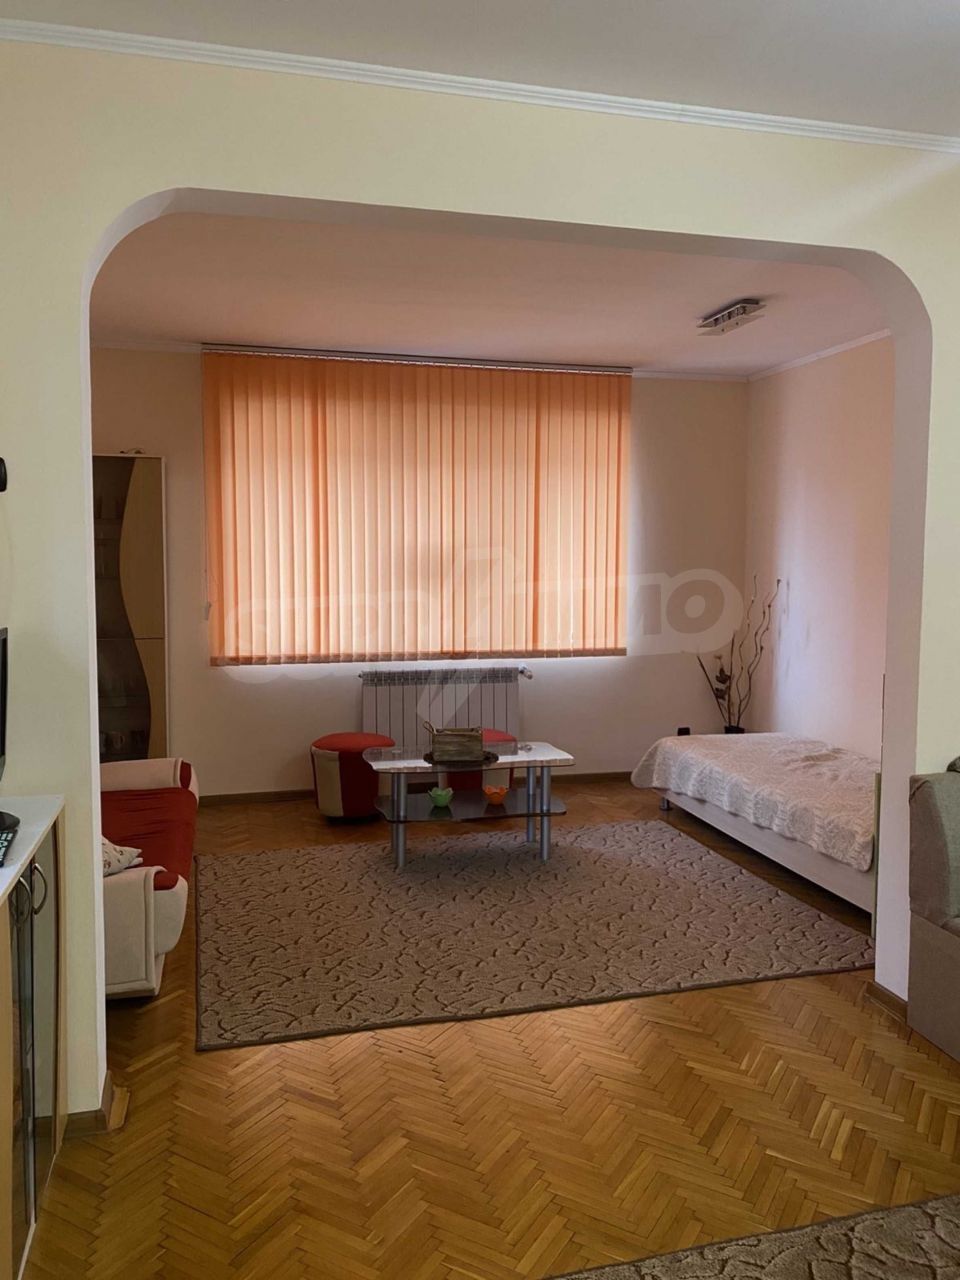 Apartment in Ruse, Bulgaria, 103.03 sq.m - picture 1